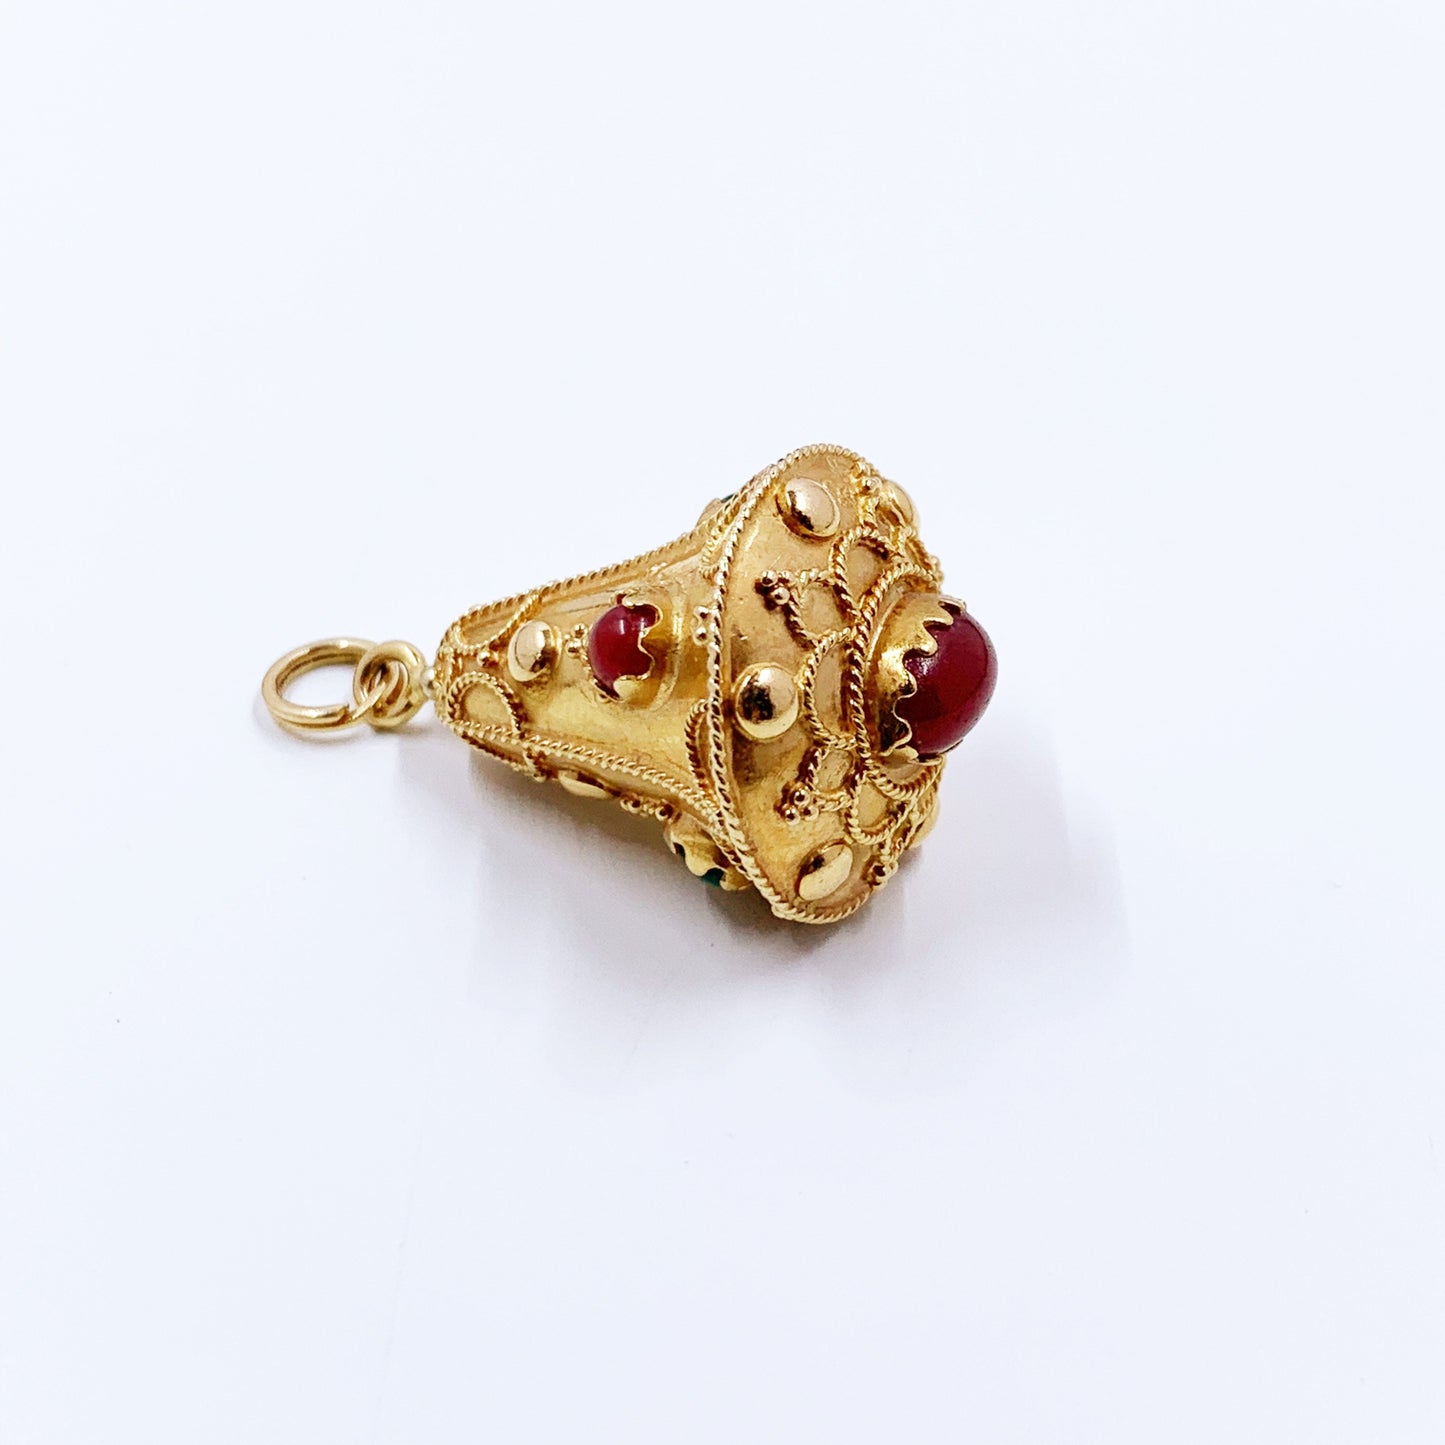 Antique Etruscan Revival 14k Pendant Fob Pendant | Victorian Agate Bell Fob Pendant